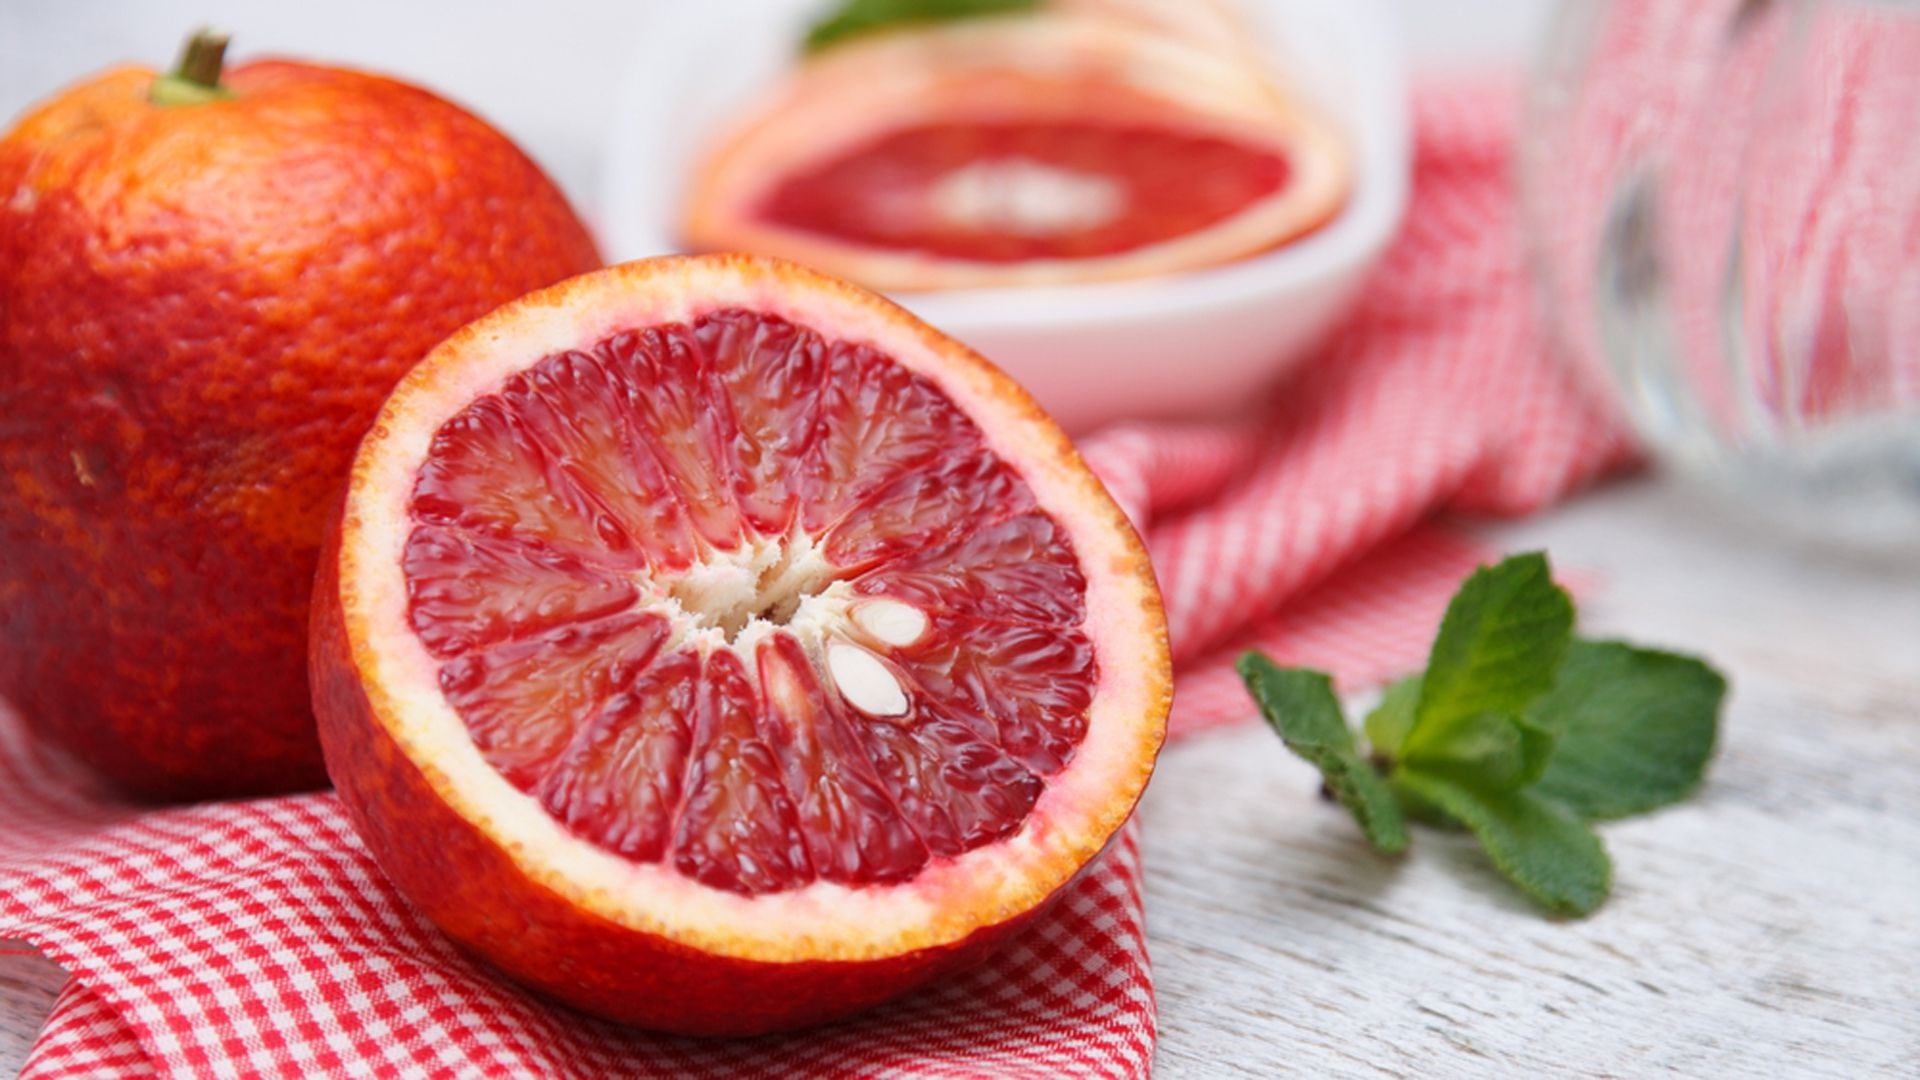 Naranjas, mandarinas y toronjas: un trío poderoso contra el colesterol
Archivo